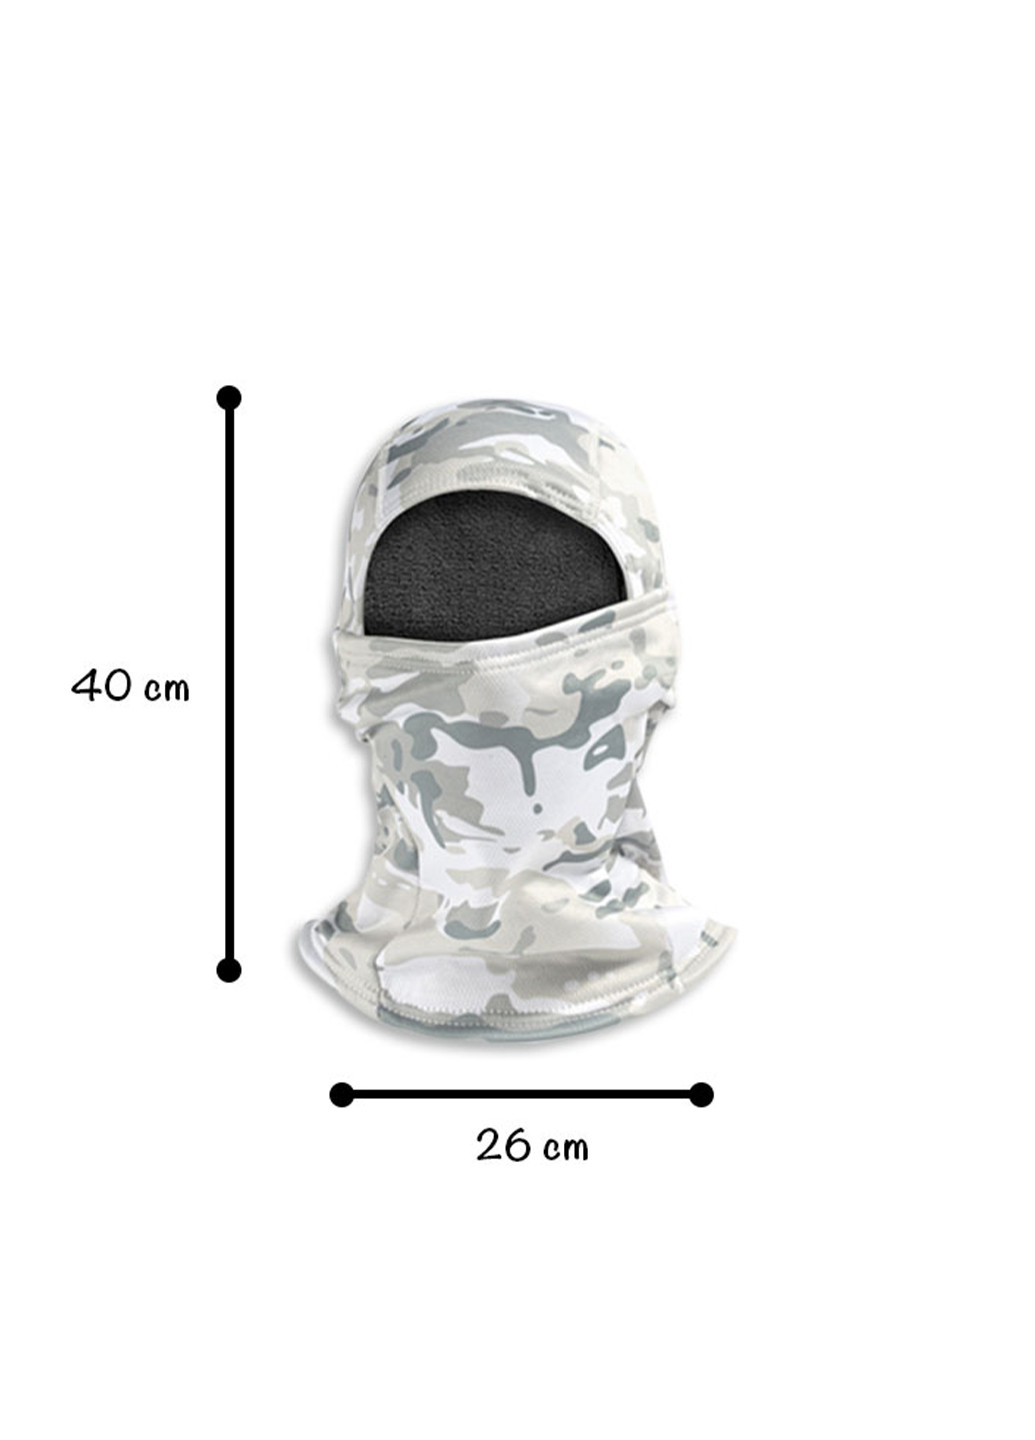 No Brand балаклава флисовая для военных, зимняя, ветрозащитный капюшон мужской камуфляжный комбинированный спортивный производство - Китай